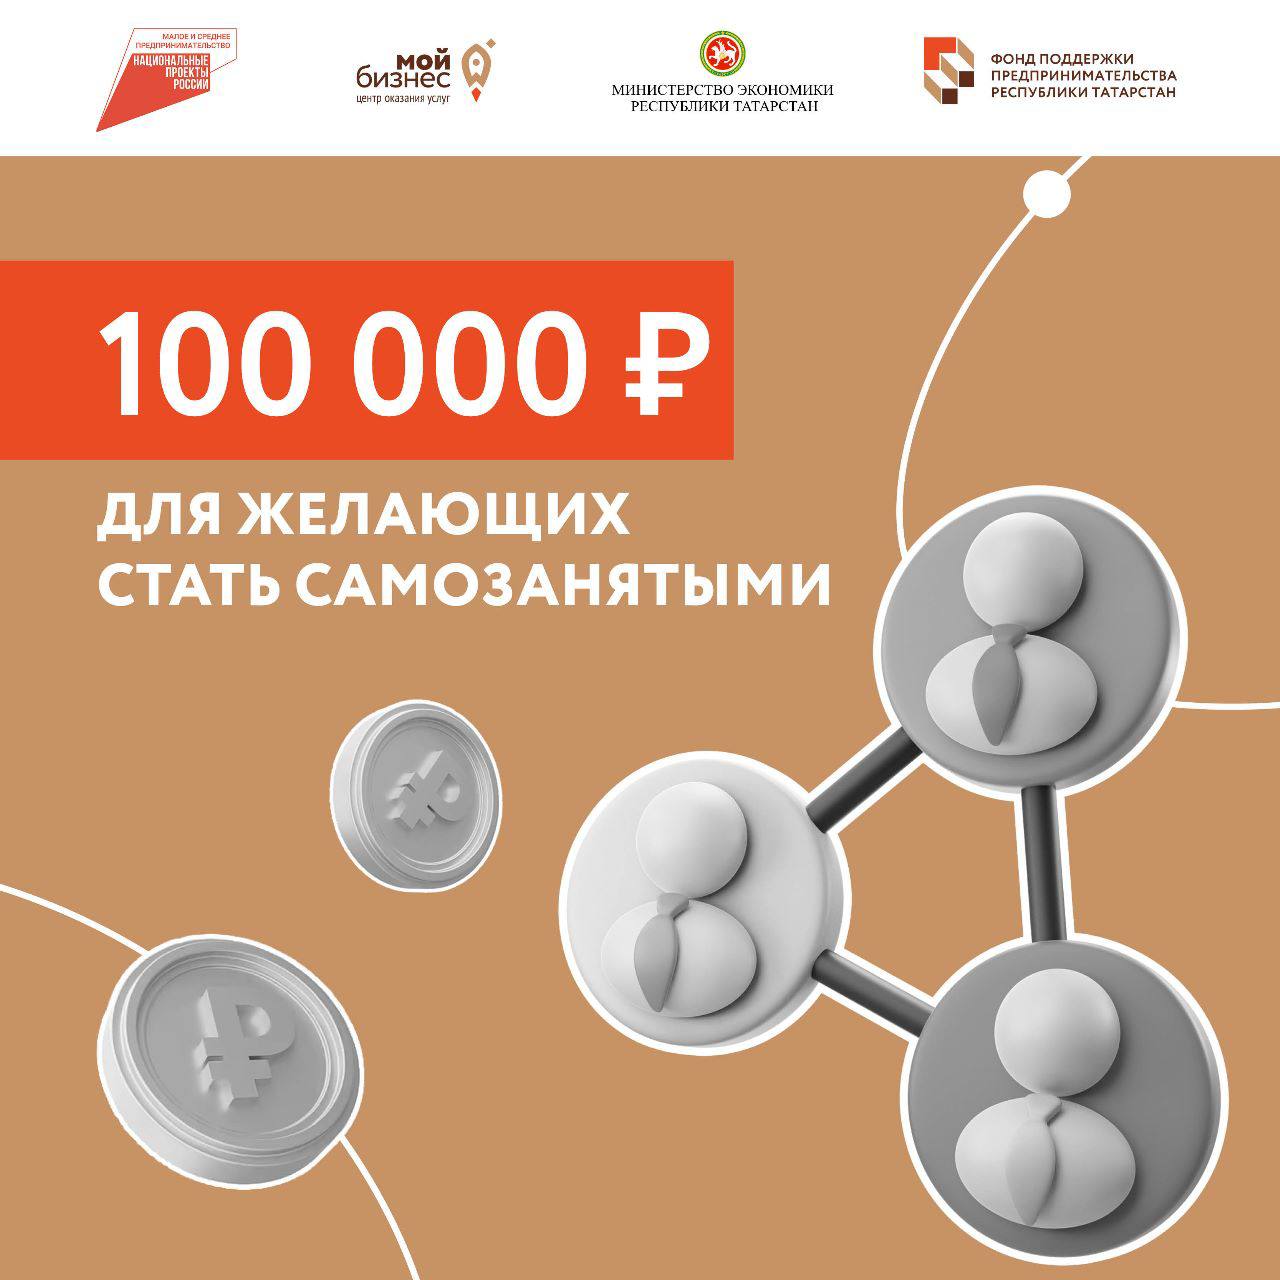 Желающие стать самозанятыми могут получить грант до 100 тыс. рублей!